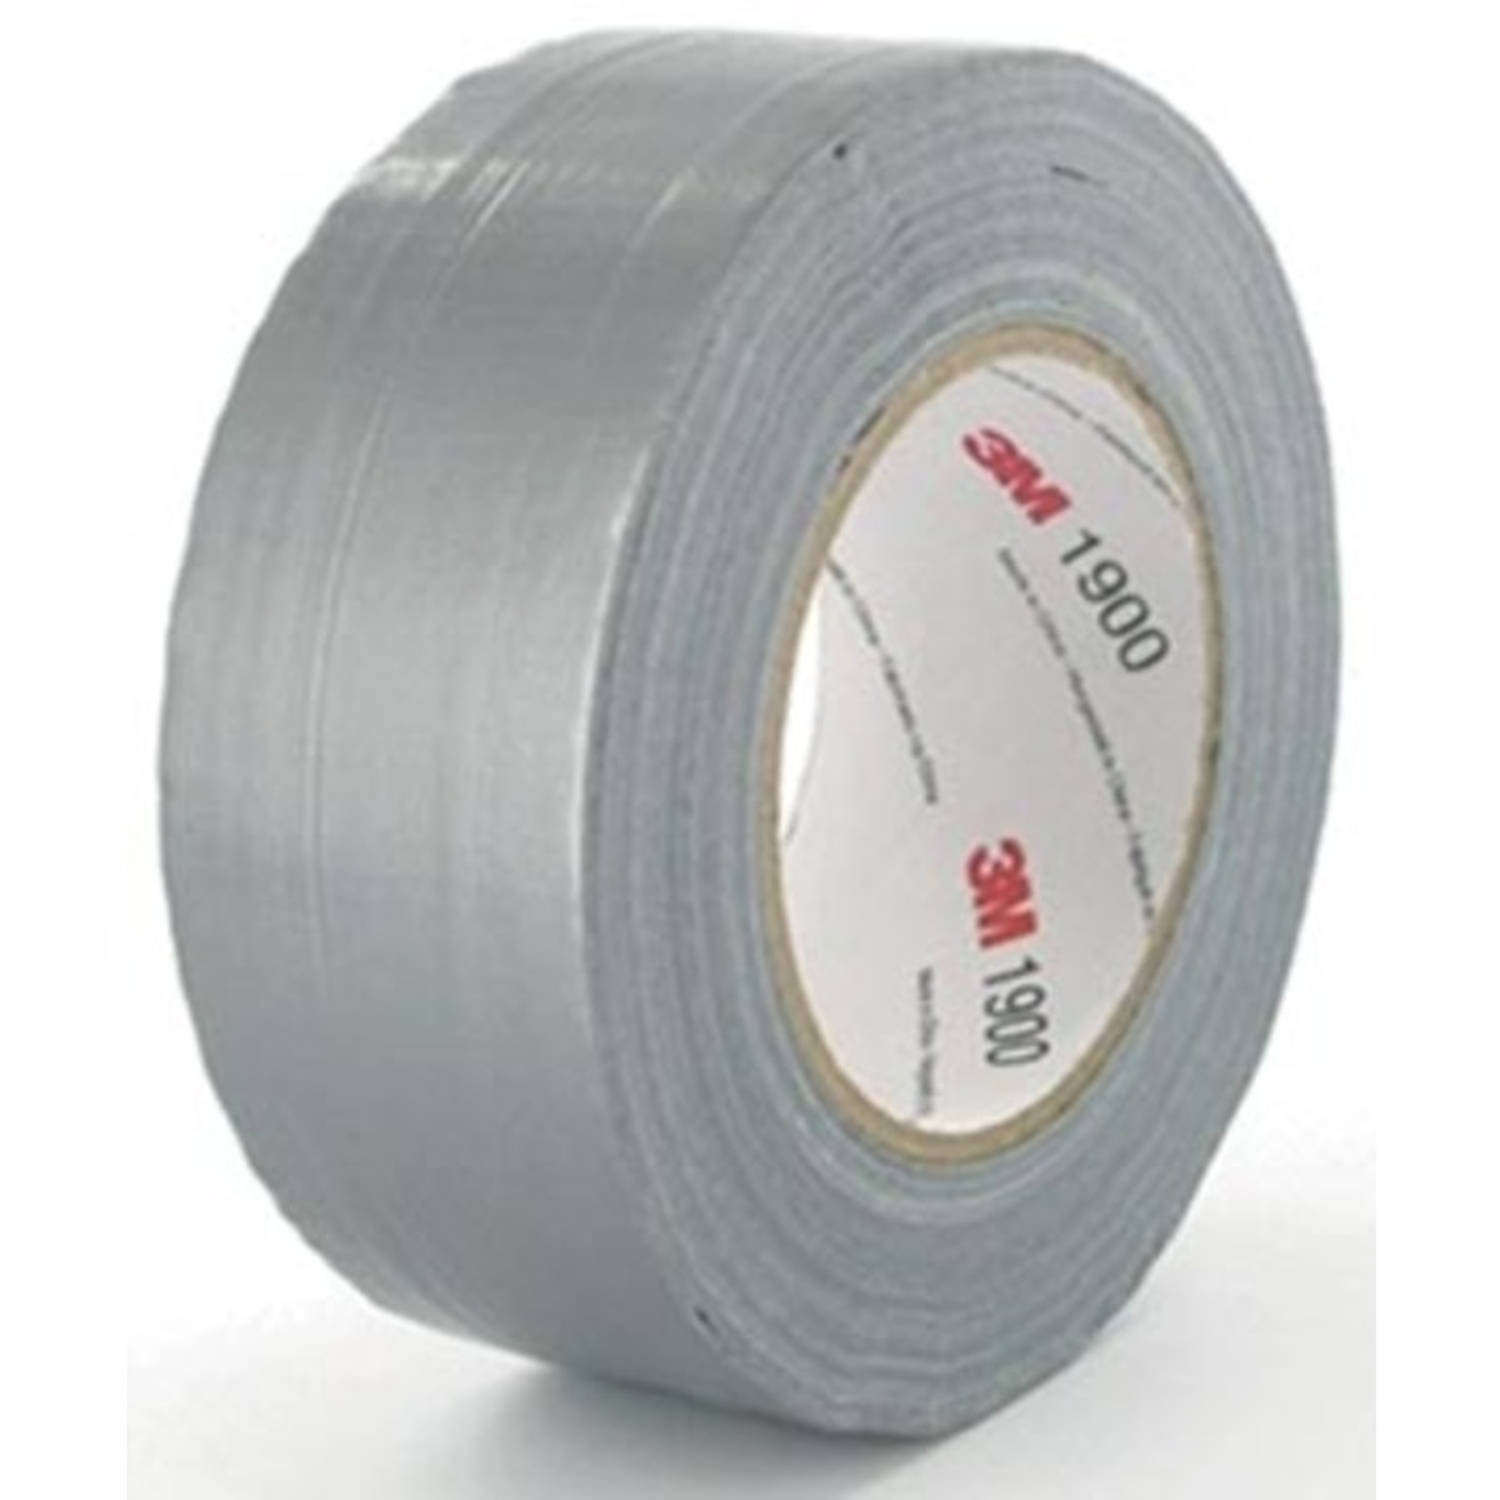 uitspraak Tot ziens Zeug 3M duct tape 1900, ft 50 mm x 50 m, zilver | Blokker